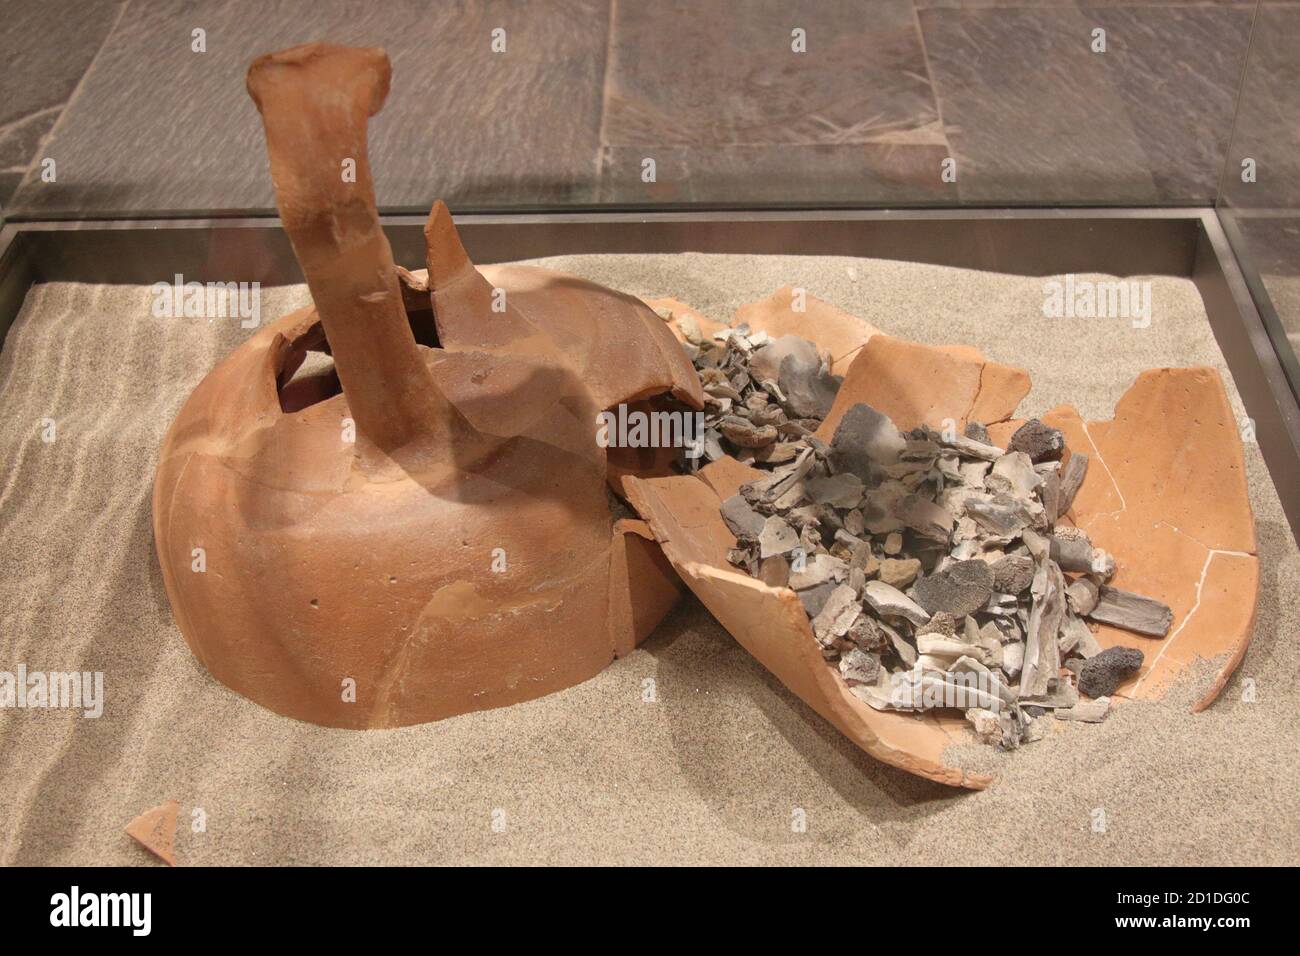 Archäologisches Museum von LaSPEZIA, Italien - Sommer 2020: Ton und Ziegel verbrannt Grab, ersten Jahrhundert v. Chr.. Stockfoto